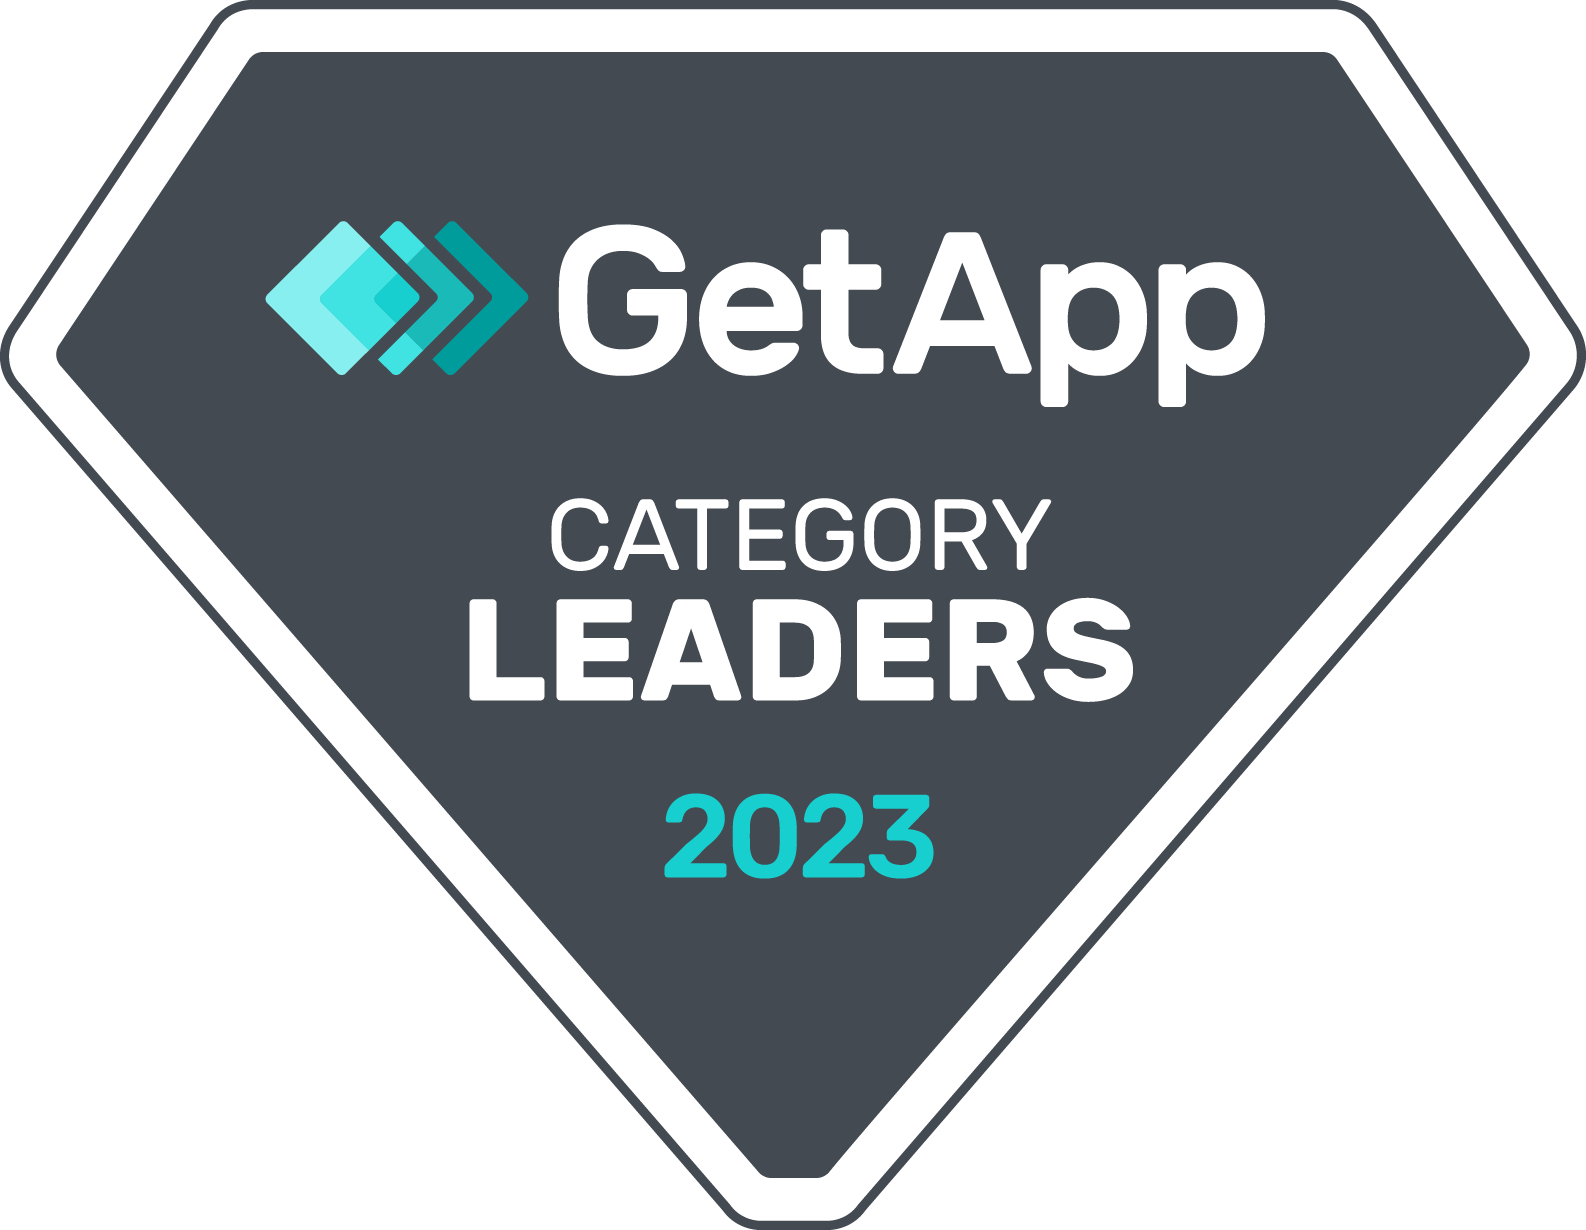 GetApp’s Category Leaders K-12 Image